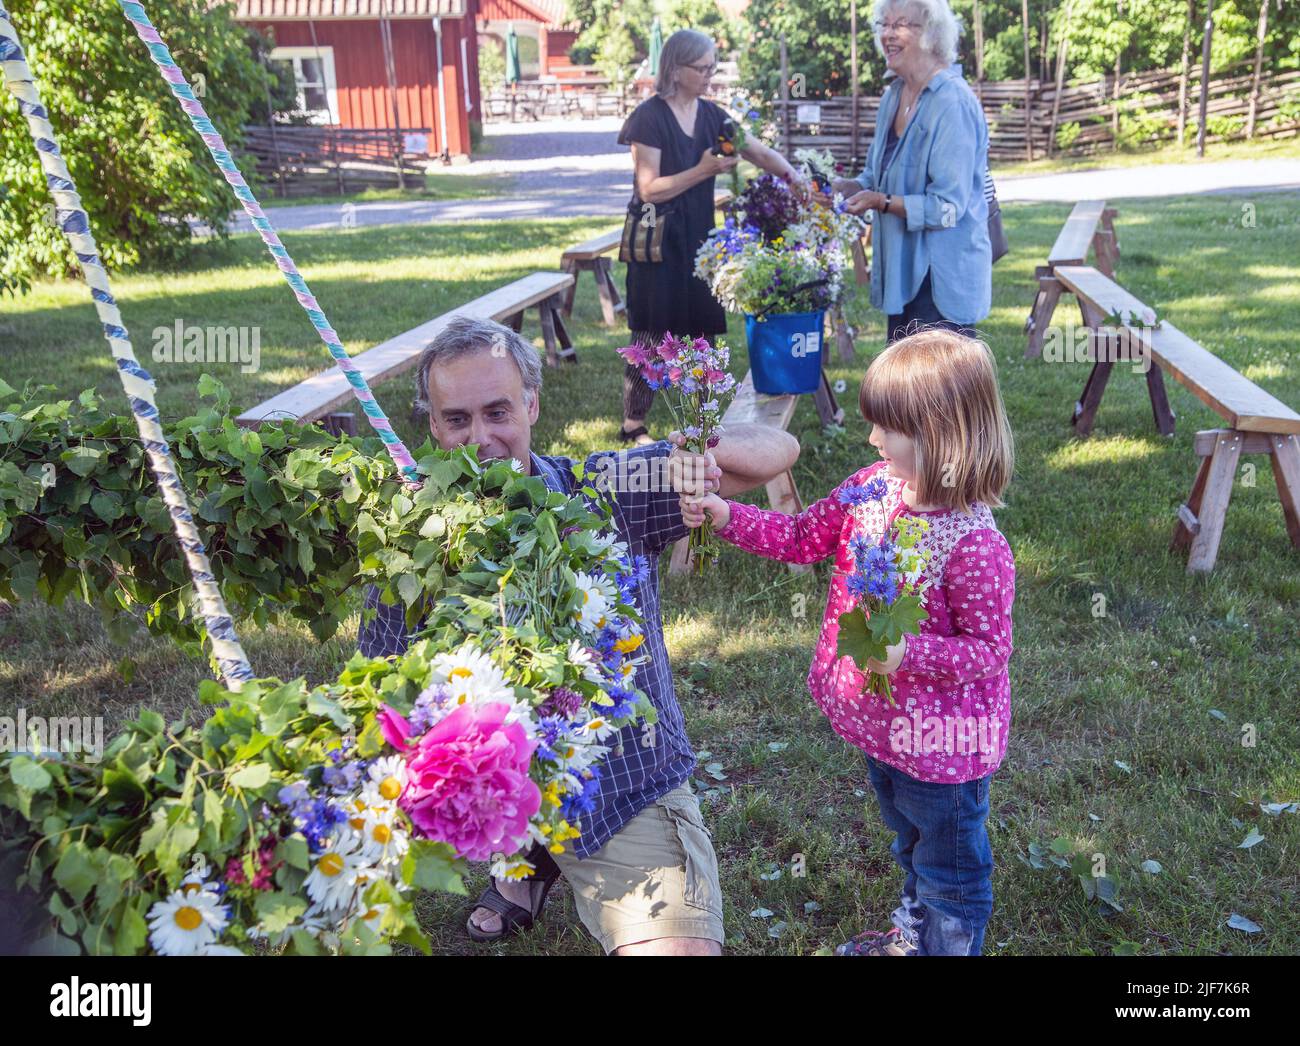 Mittsommer in Schweden binden Eltern und Kinder Blumen auf einem großen Kranz in malmkoping, Schweden Stockfoto